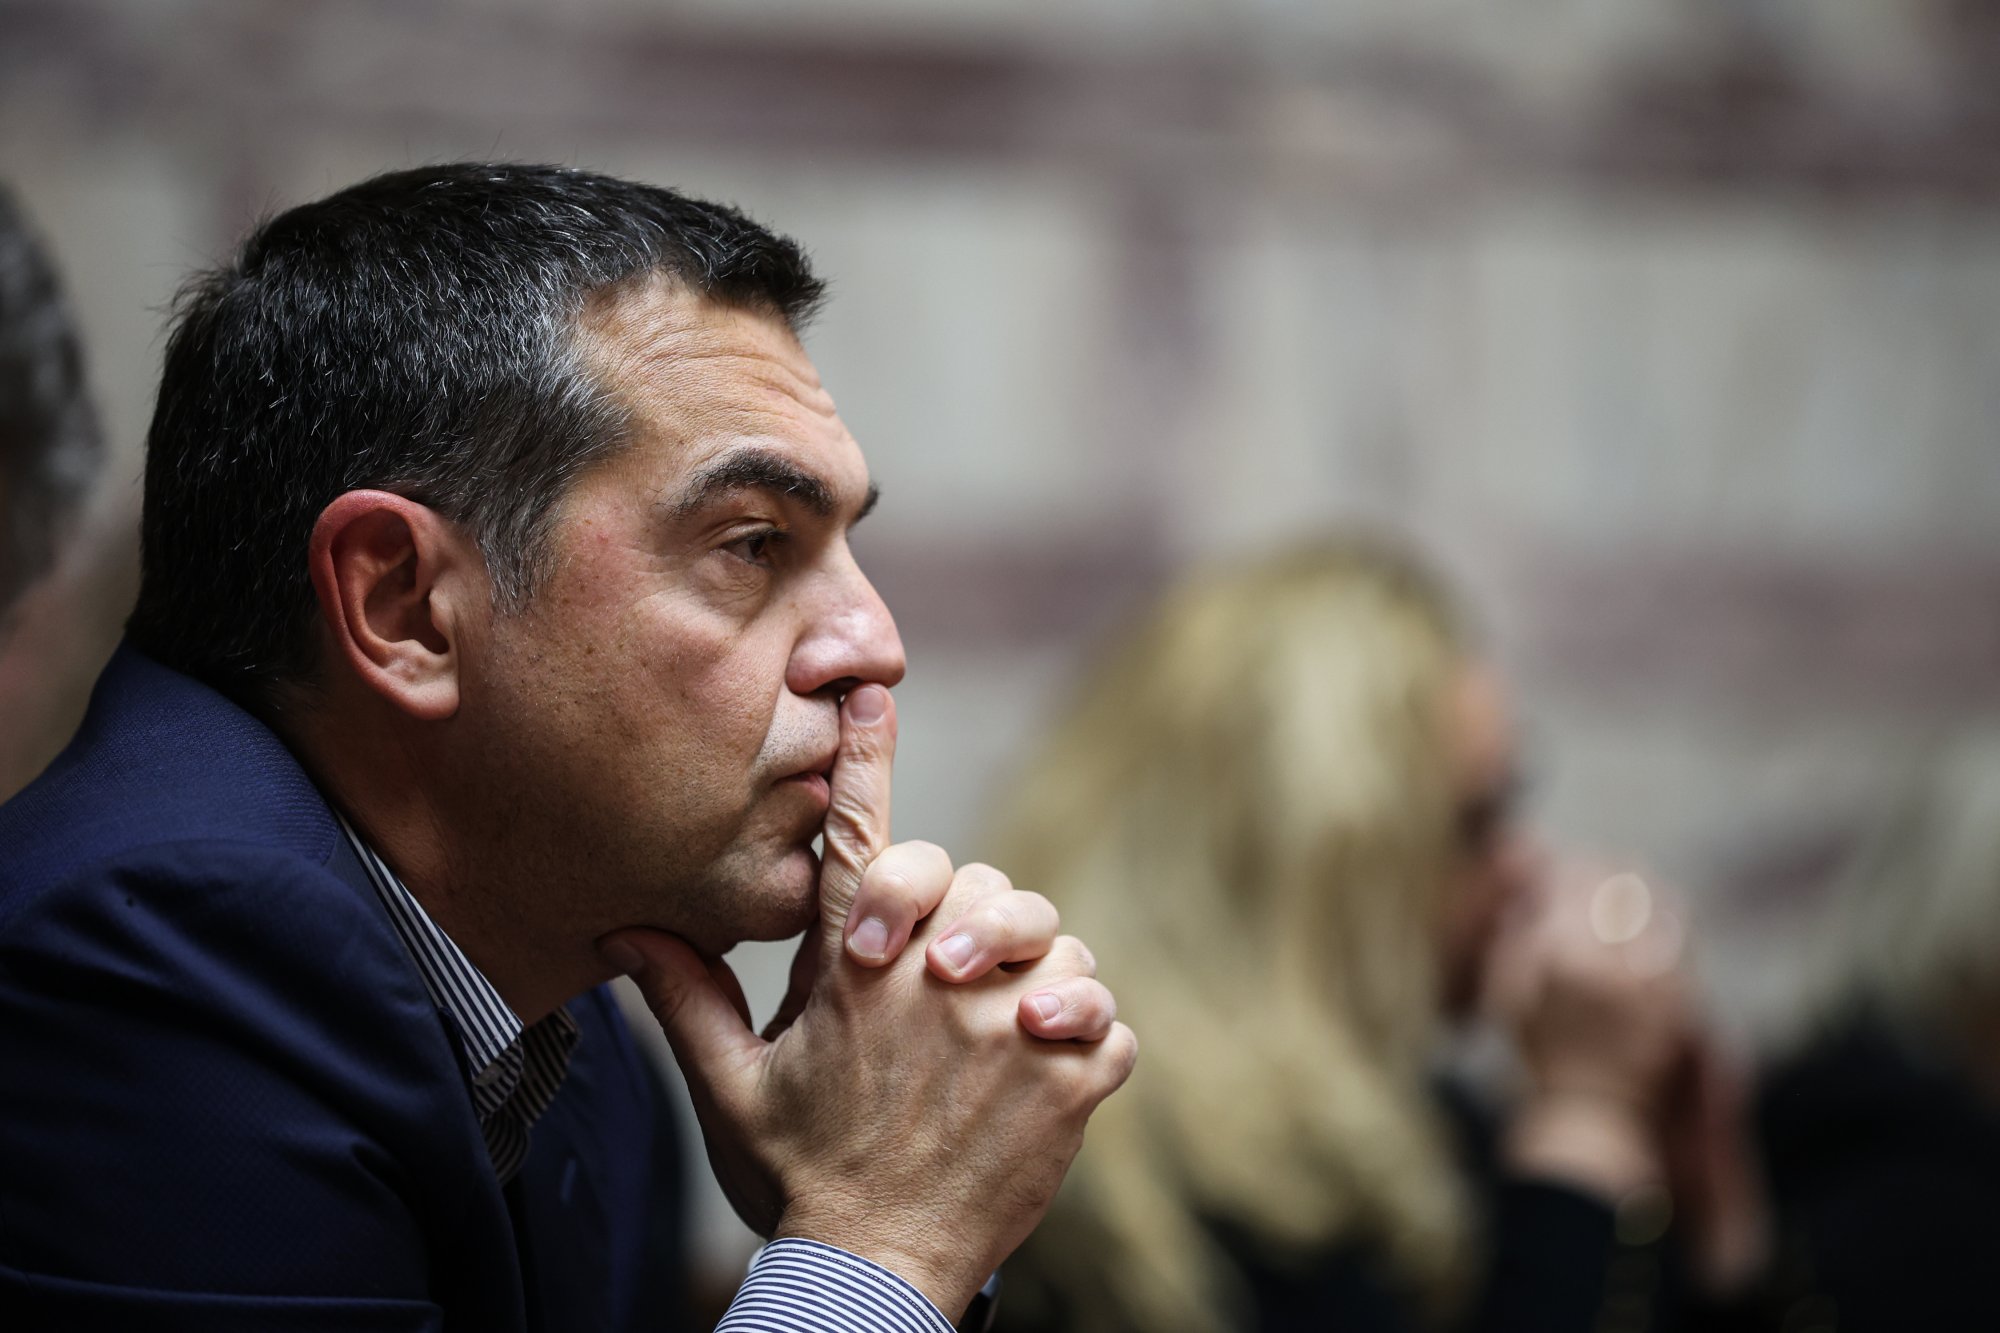 Messaggio di Tsipras con riferimento a Gramsci sulle “identità plurali della sinistra” – Economic Post